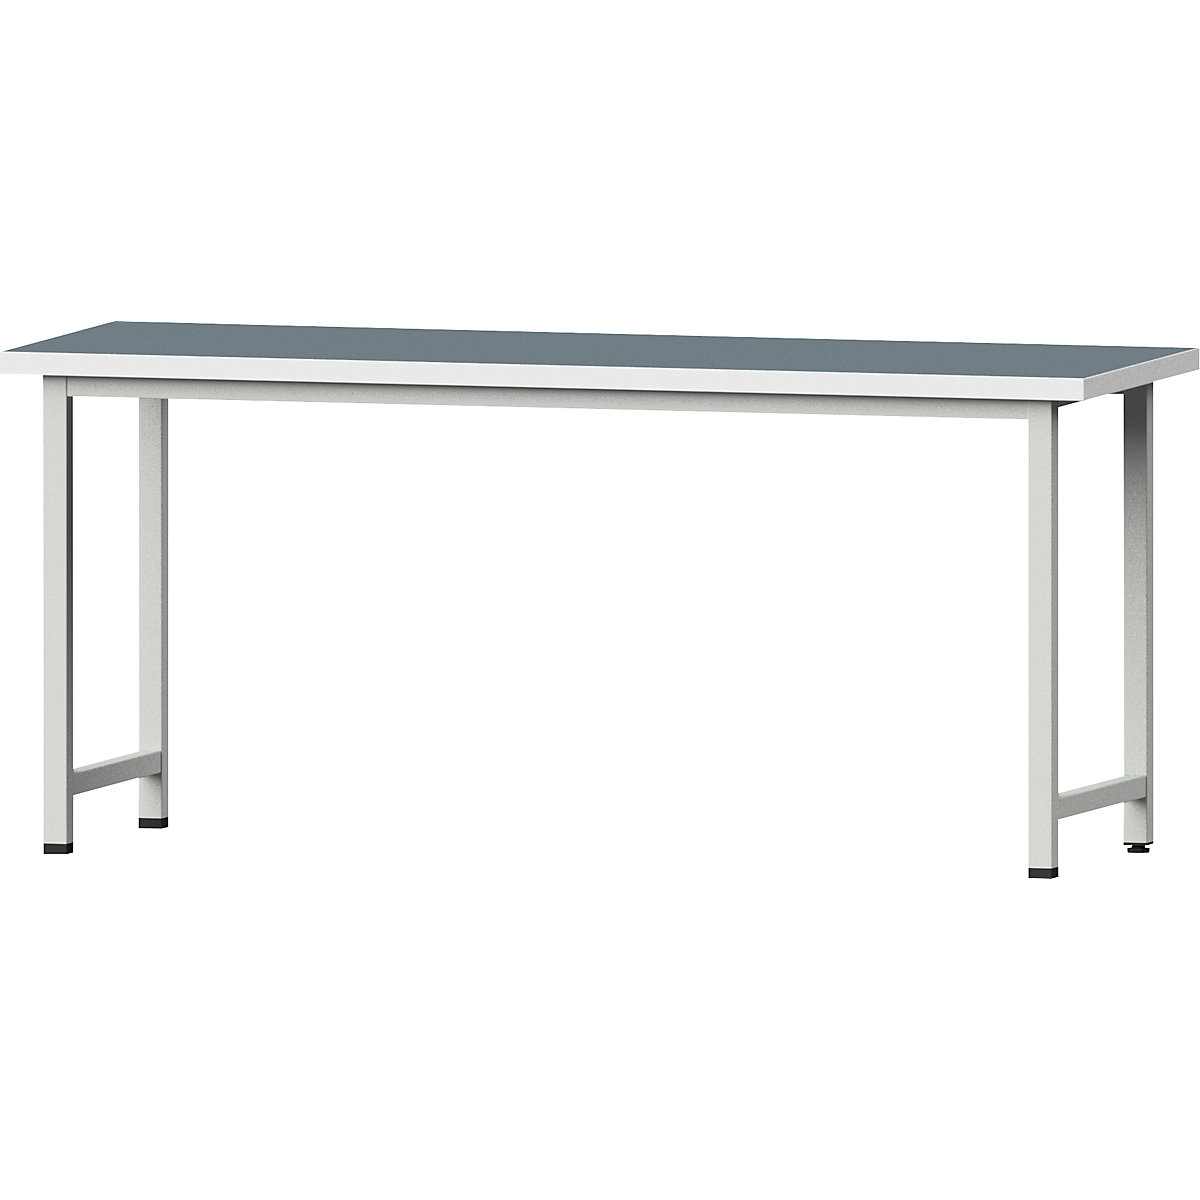 Dielenský stôl, stojanové vyhotovenie – ANKE, základný model, š x h 2000 x 700 mm, univerzálna doska, výška 890 mm-17